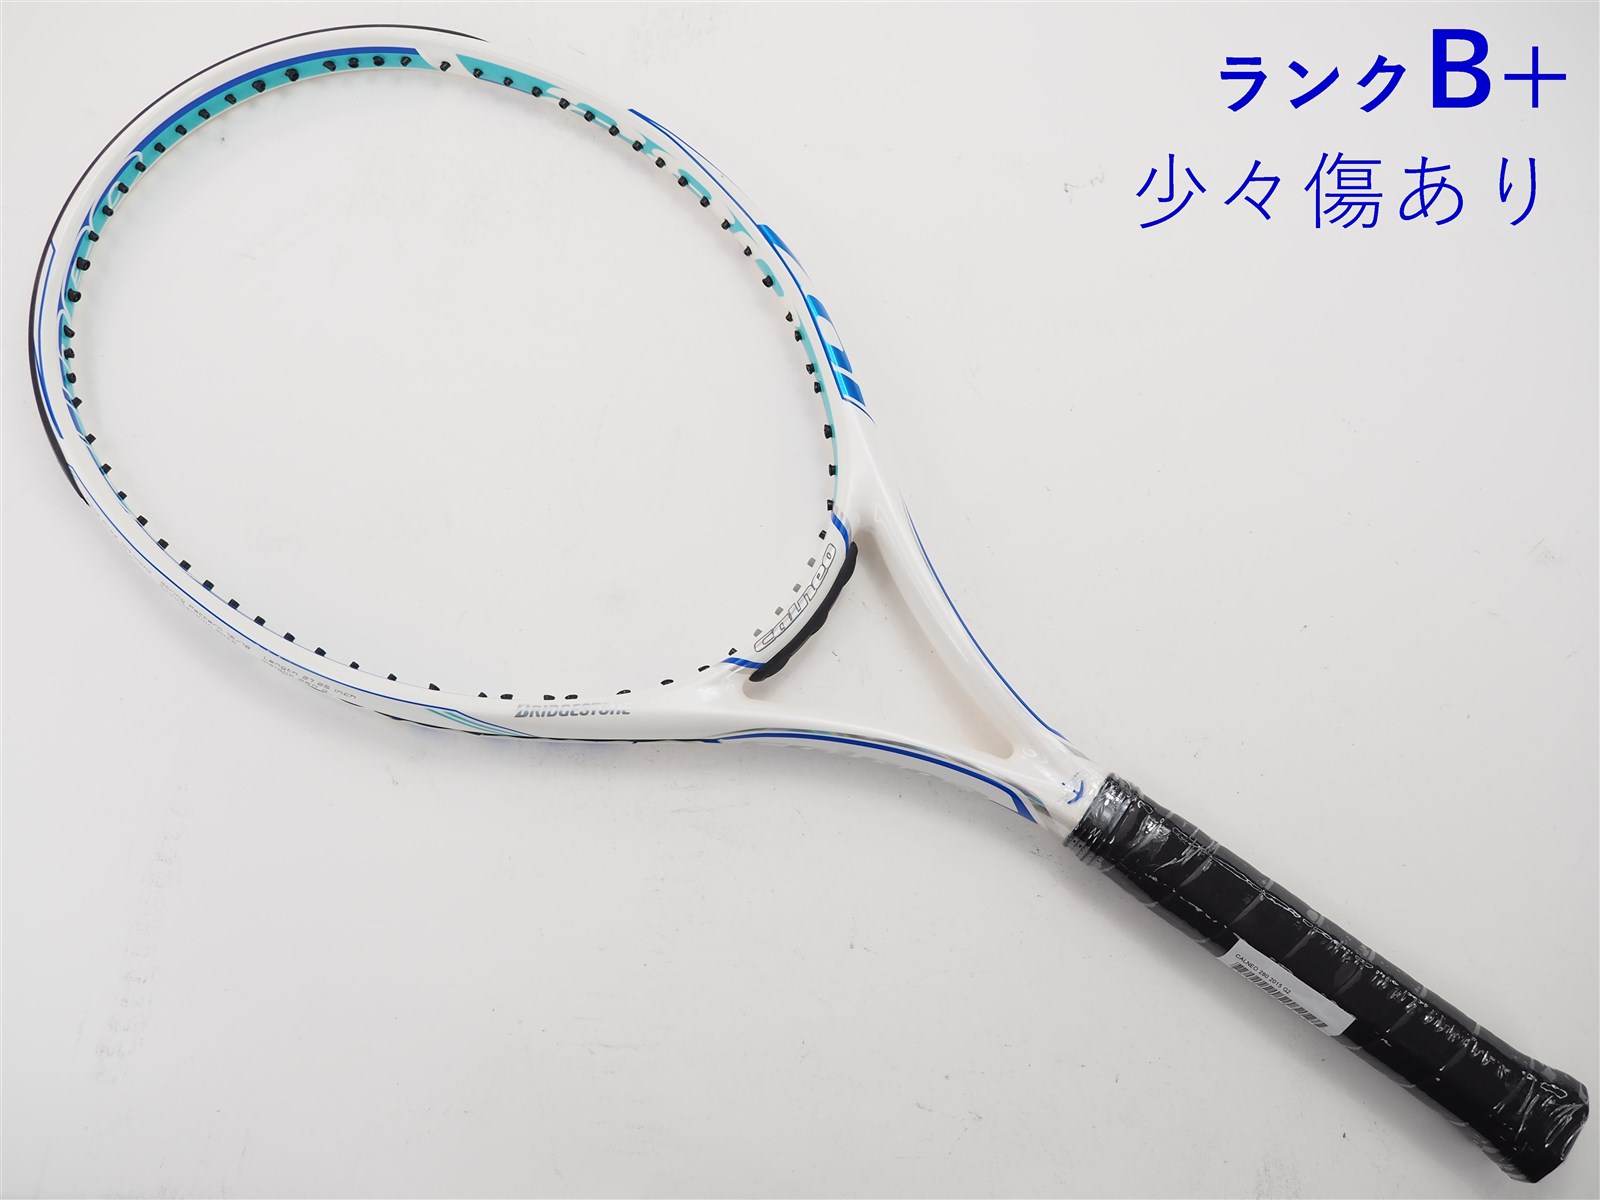 テニスラケット ブリヂストン カルネオ 280 2016年モデル (G2)BRIDGESTONE CALNEO 280 201623-26-22mm重量